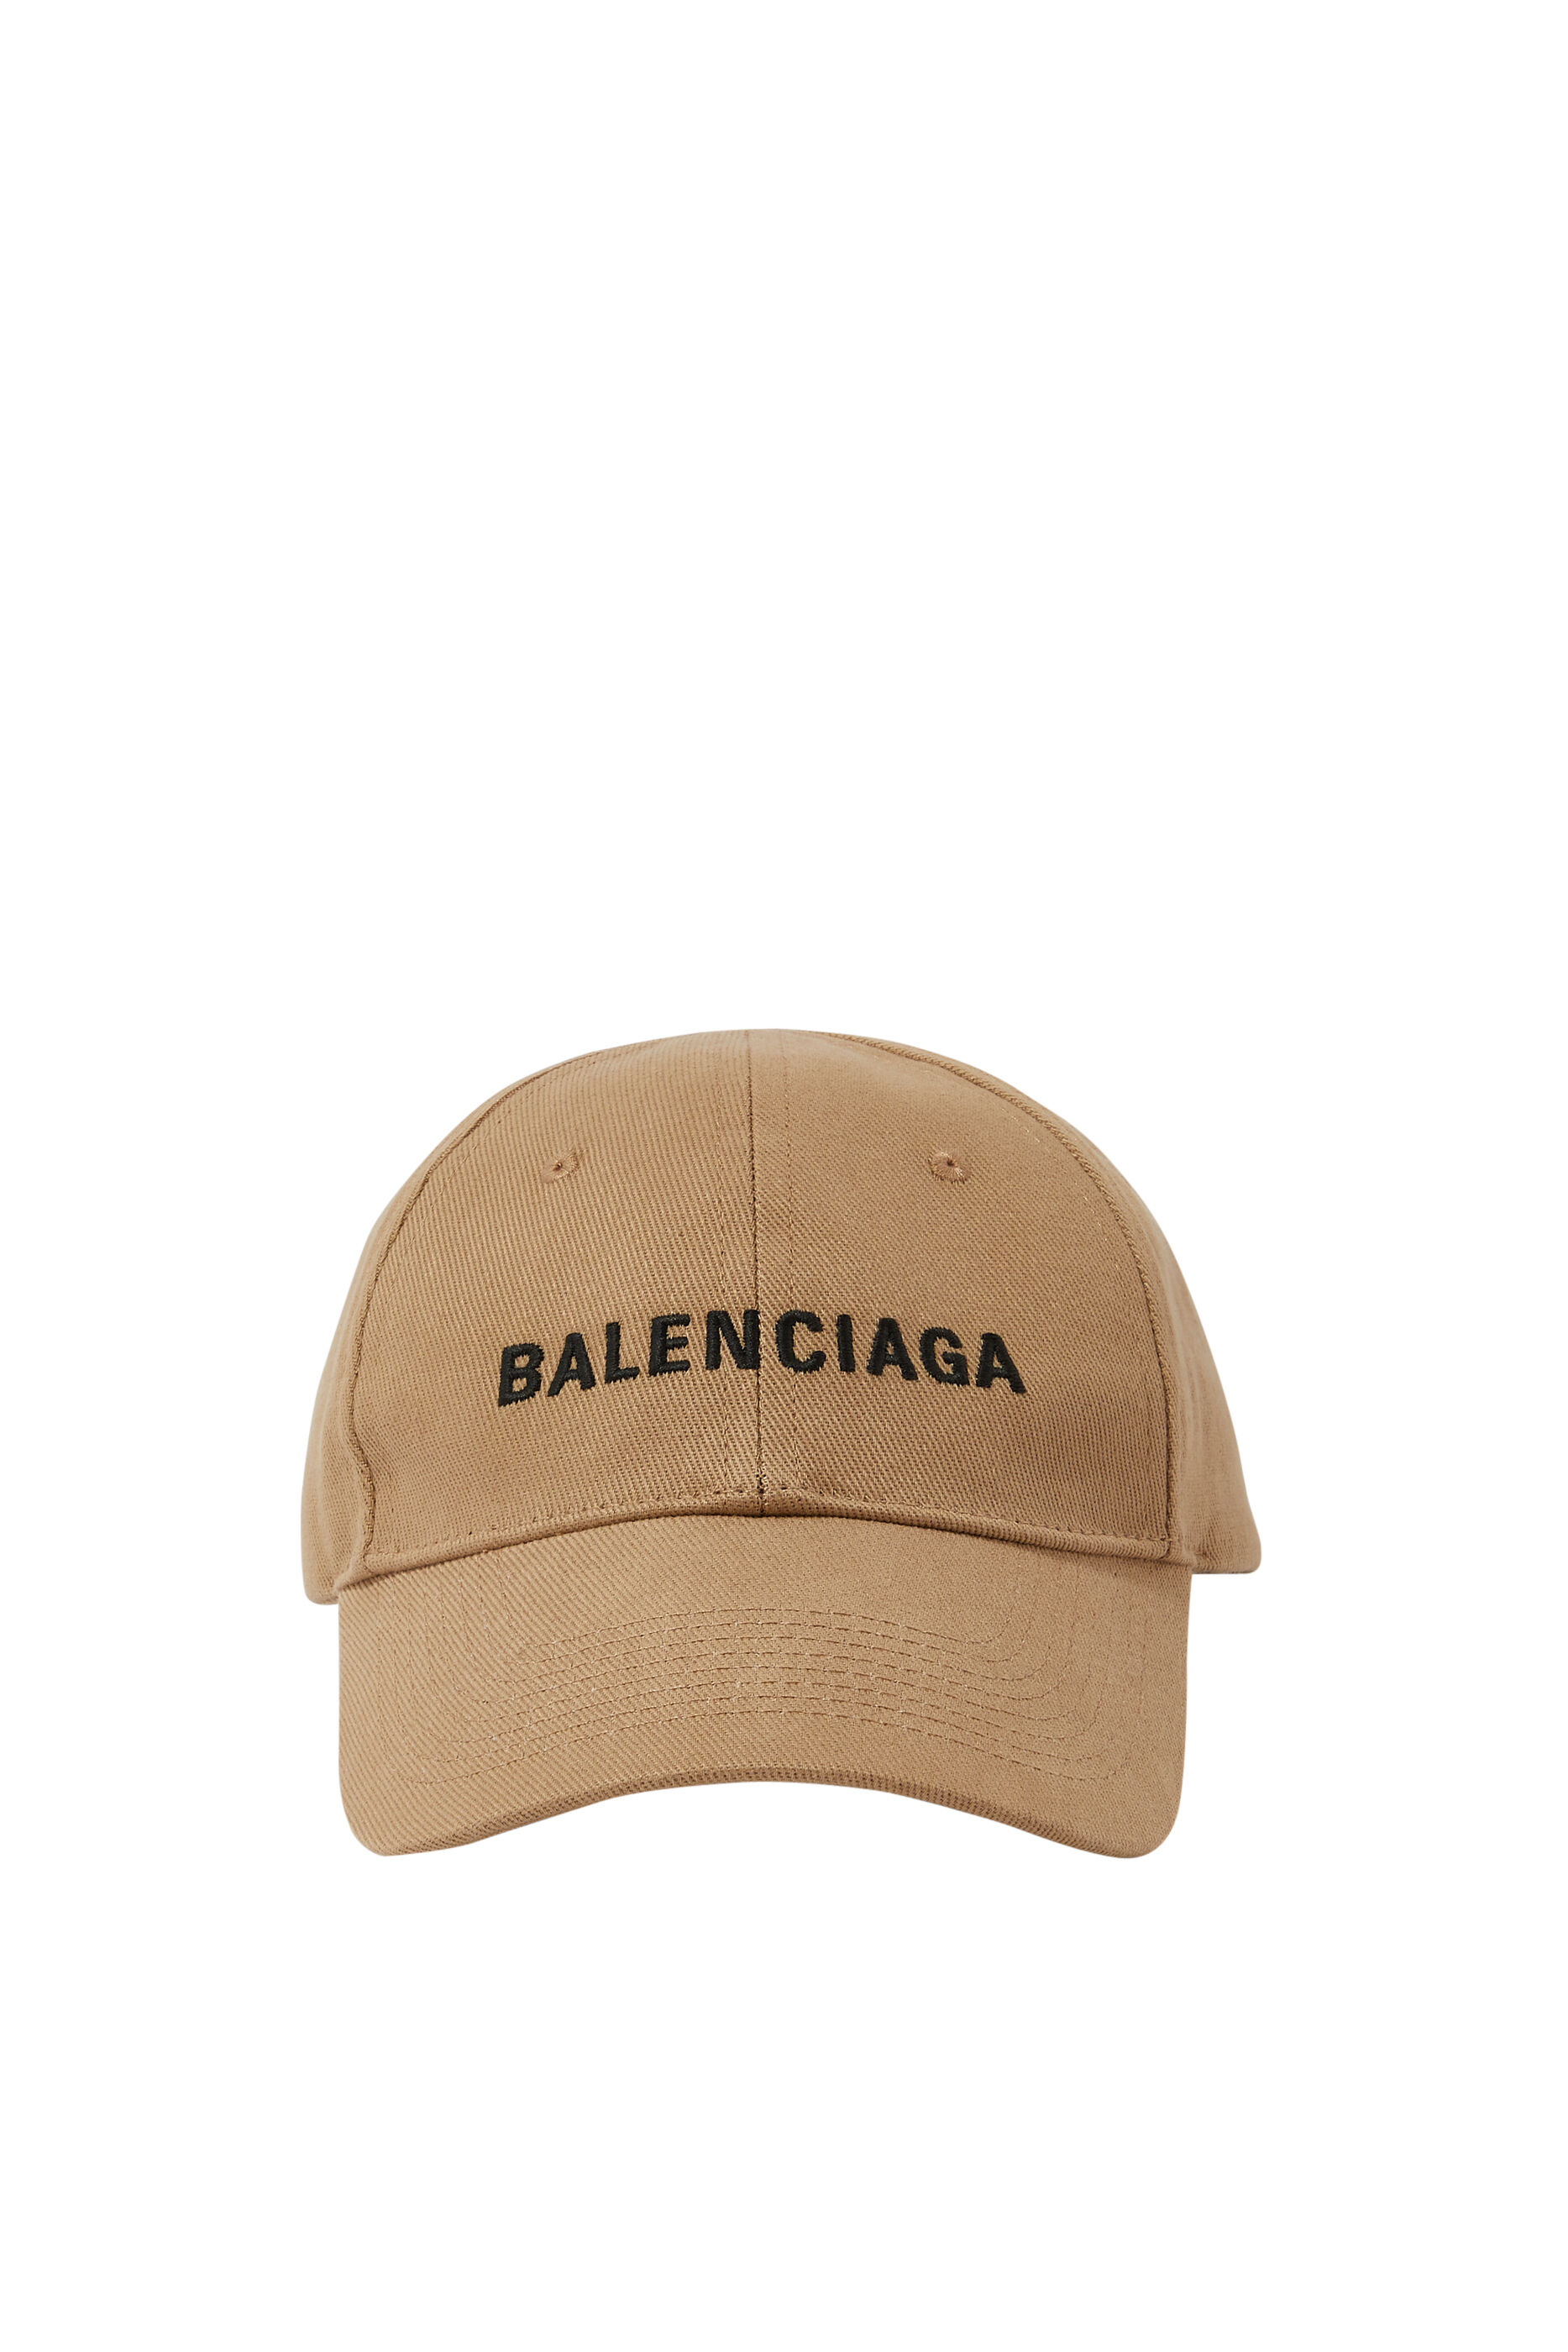 BALENCIAGA Embroidered cottontwill baseball cap  NETAPORTER